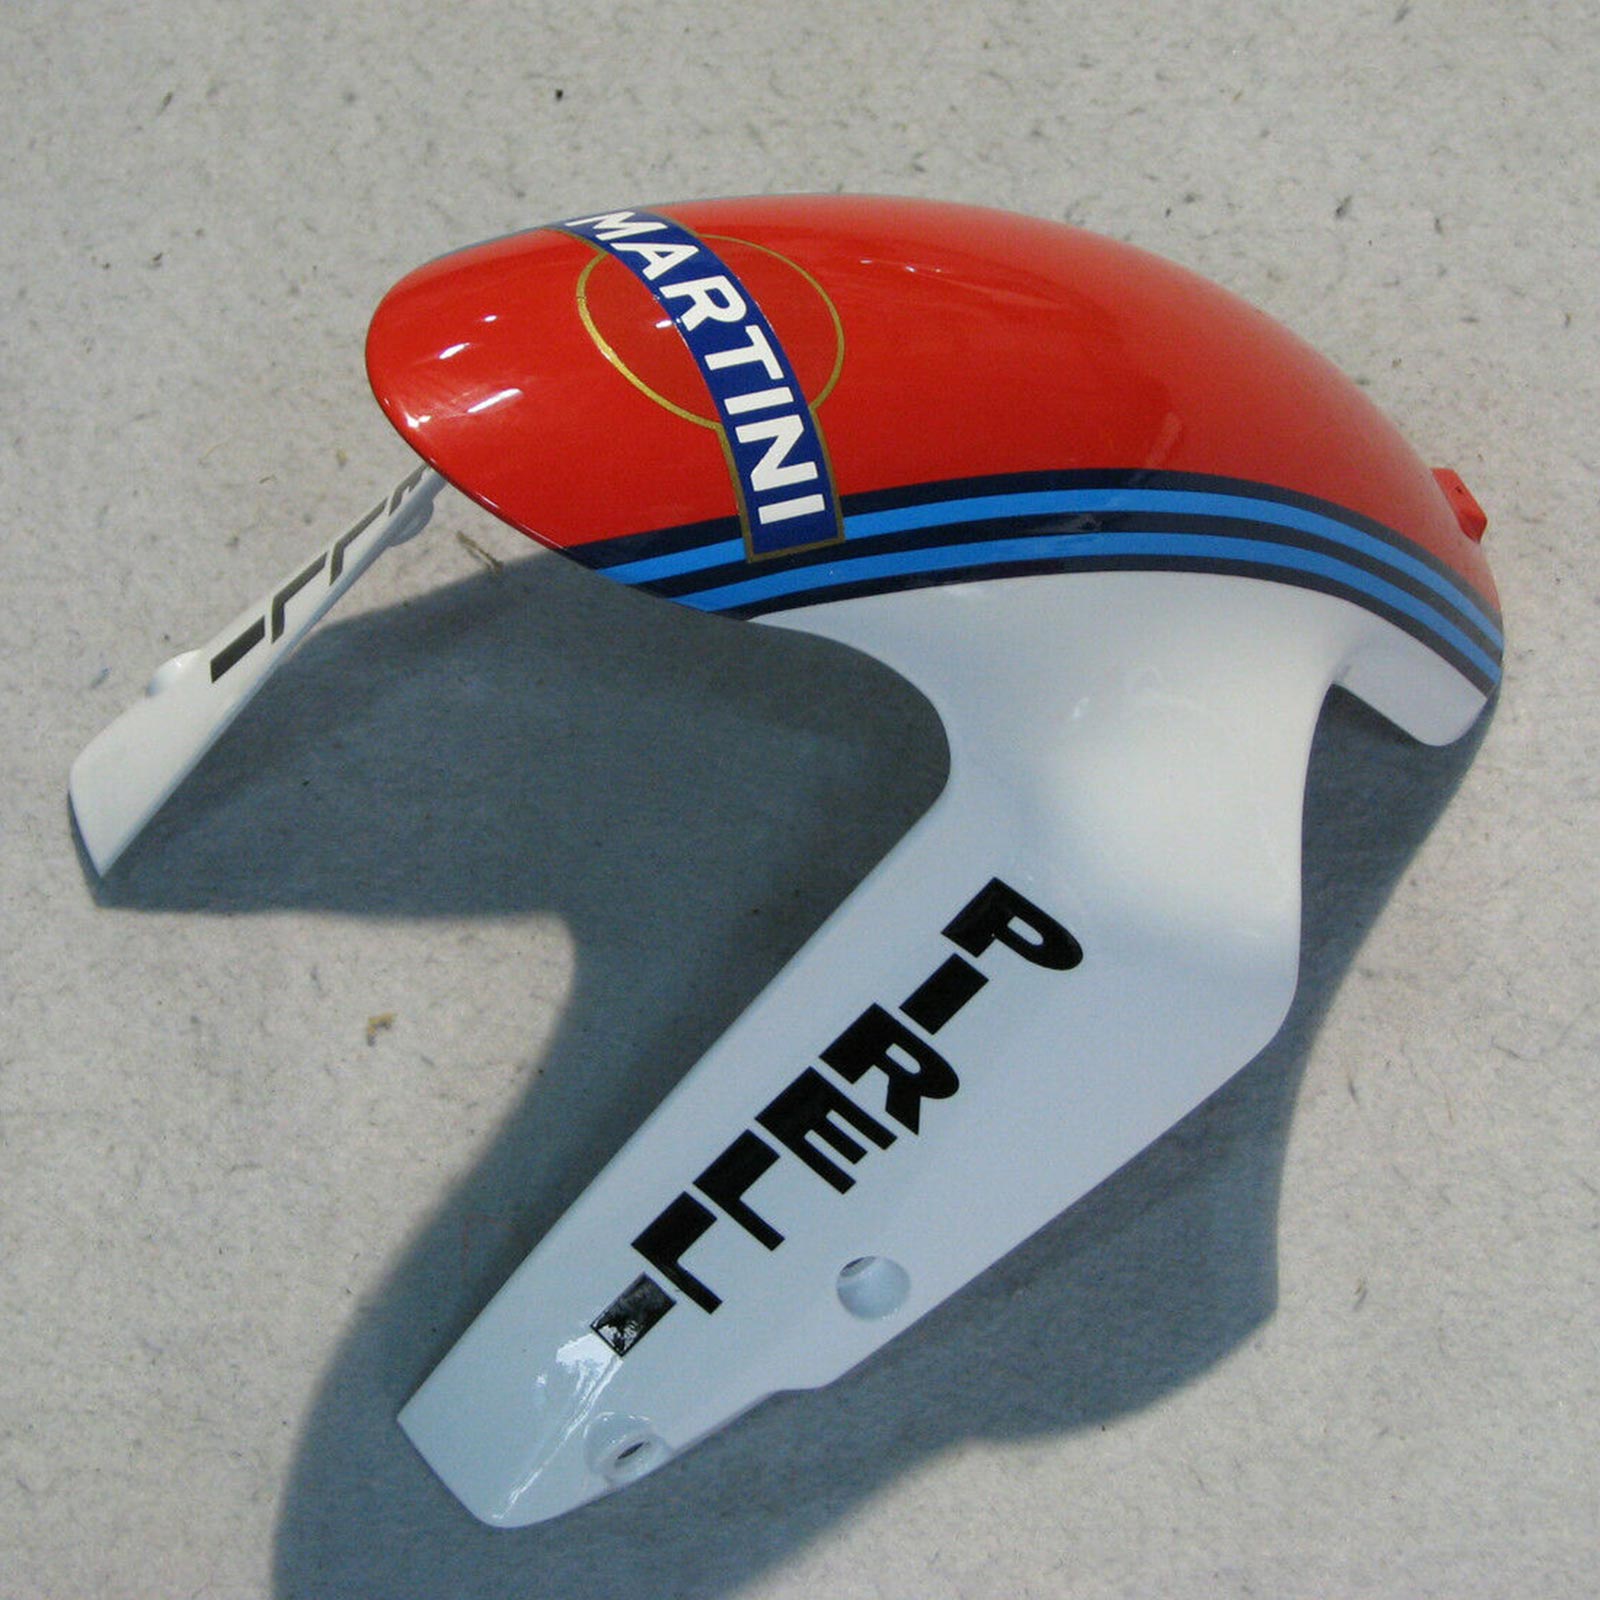 Kit carena Amotopart 2007-2012 Ducati 1098 848 1198